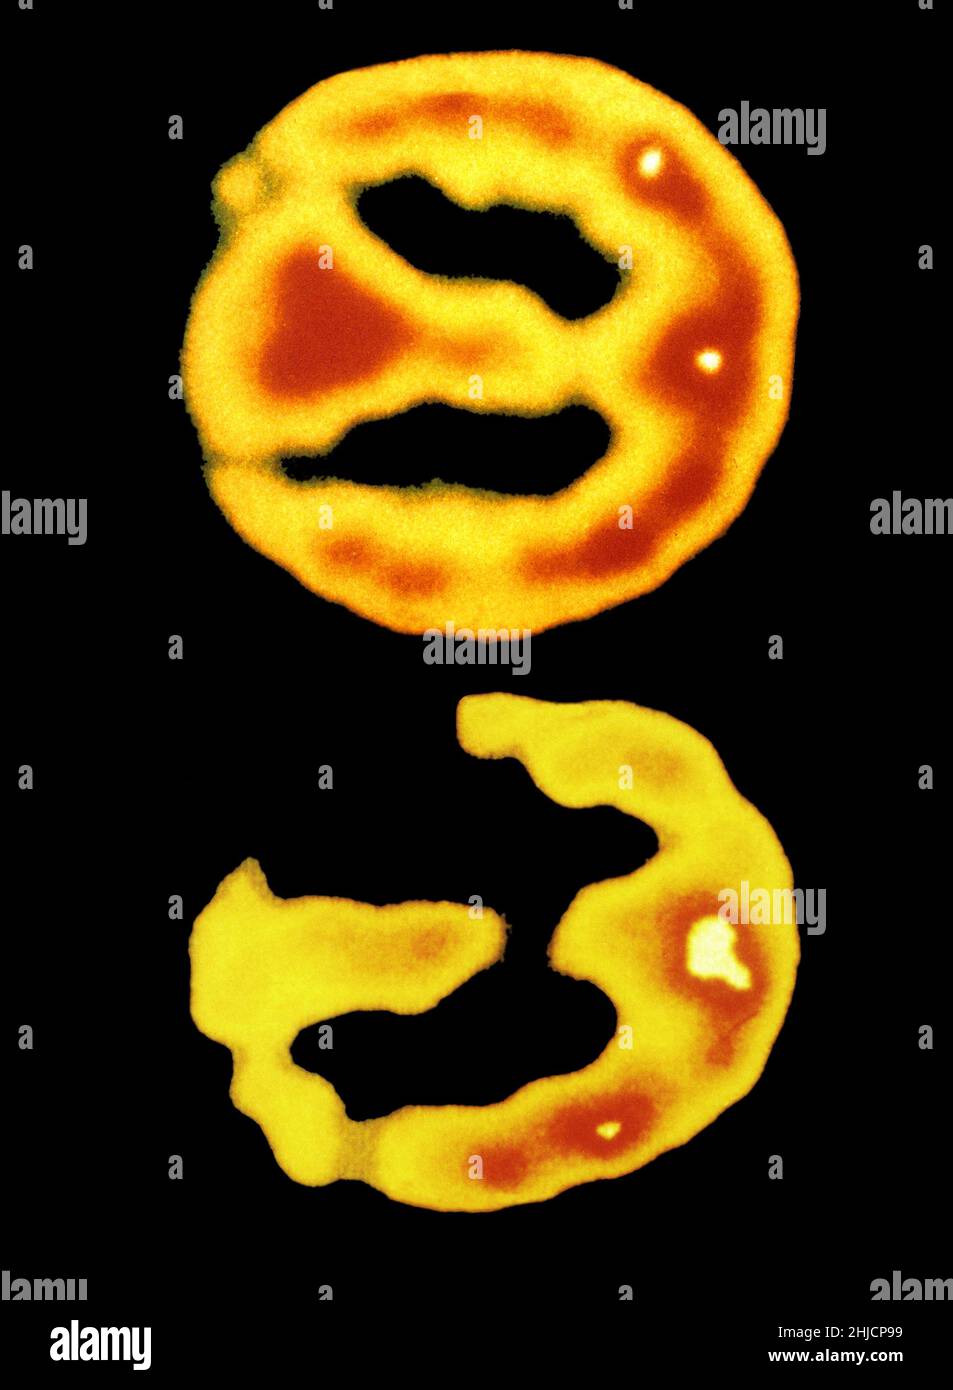 Deux acquisitions TEP d'un cerveau humain normal (en haut) et une atteinte de la maladie d'Alzheimer (en bas). Banque D'Images